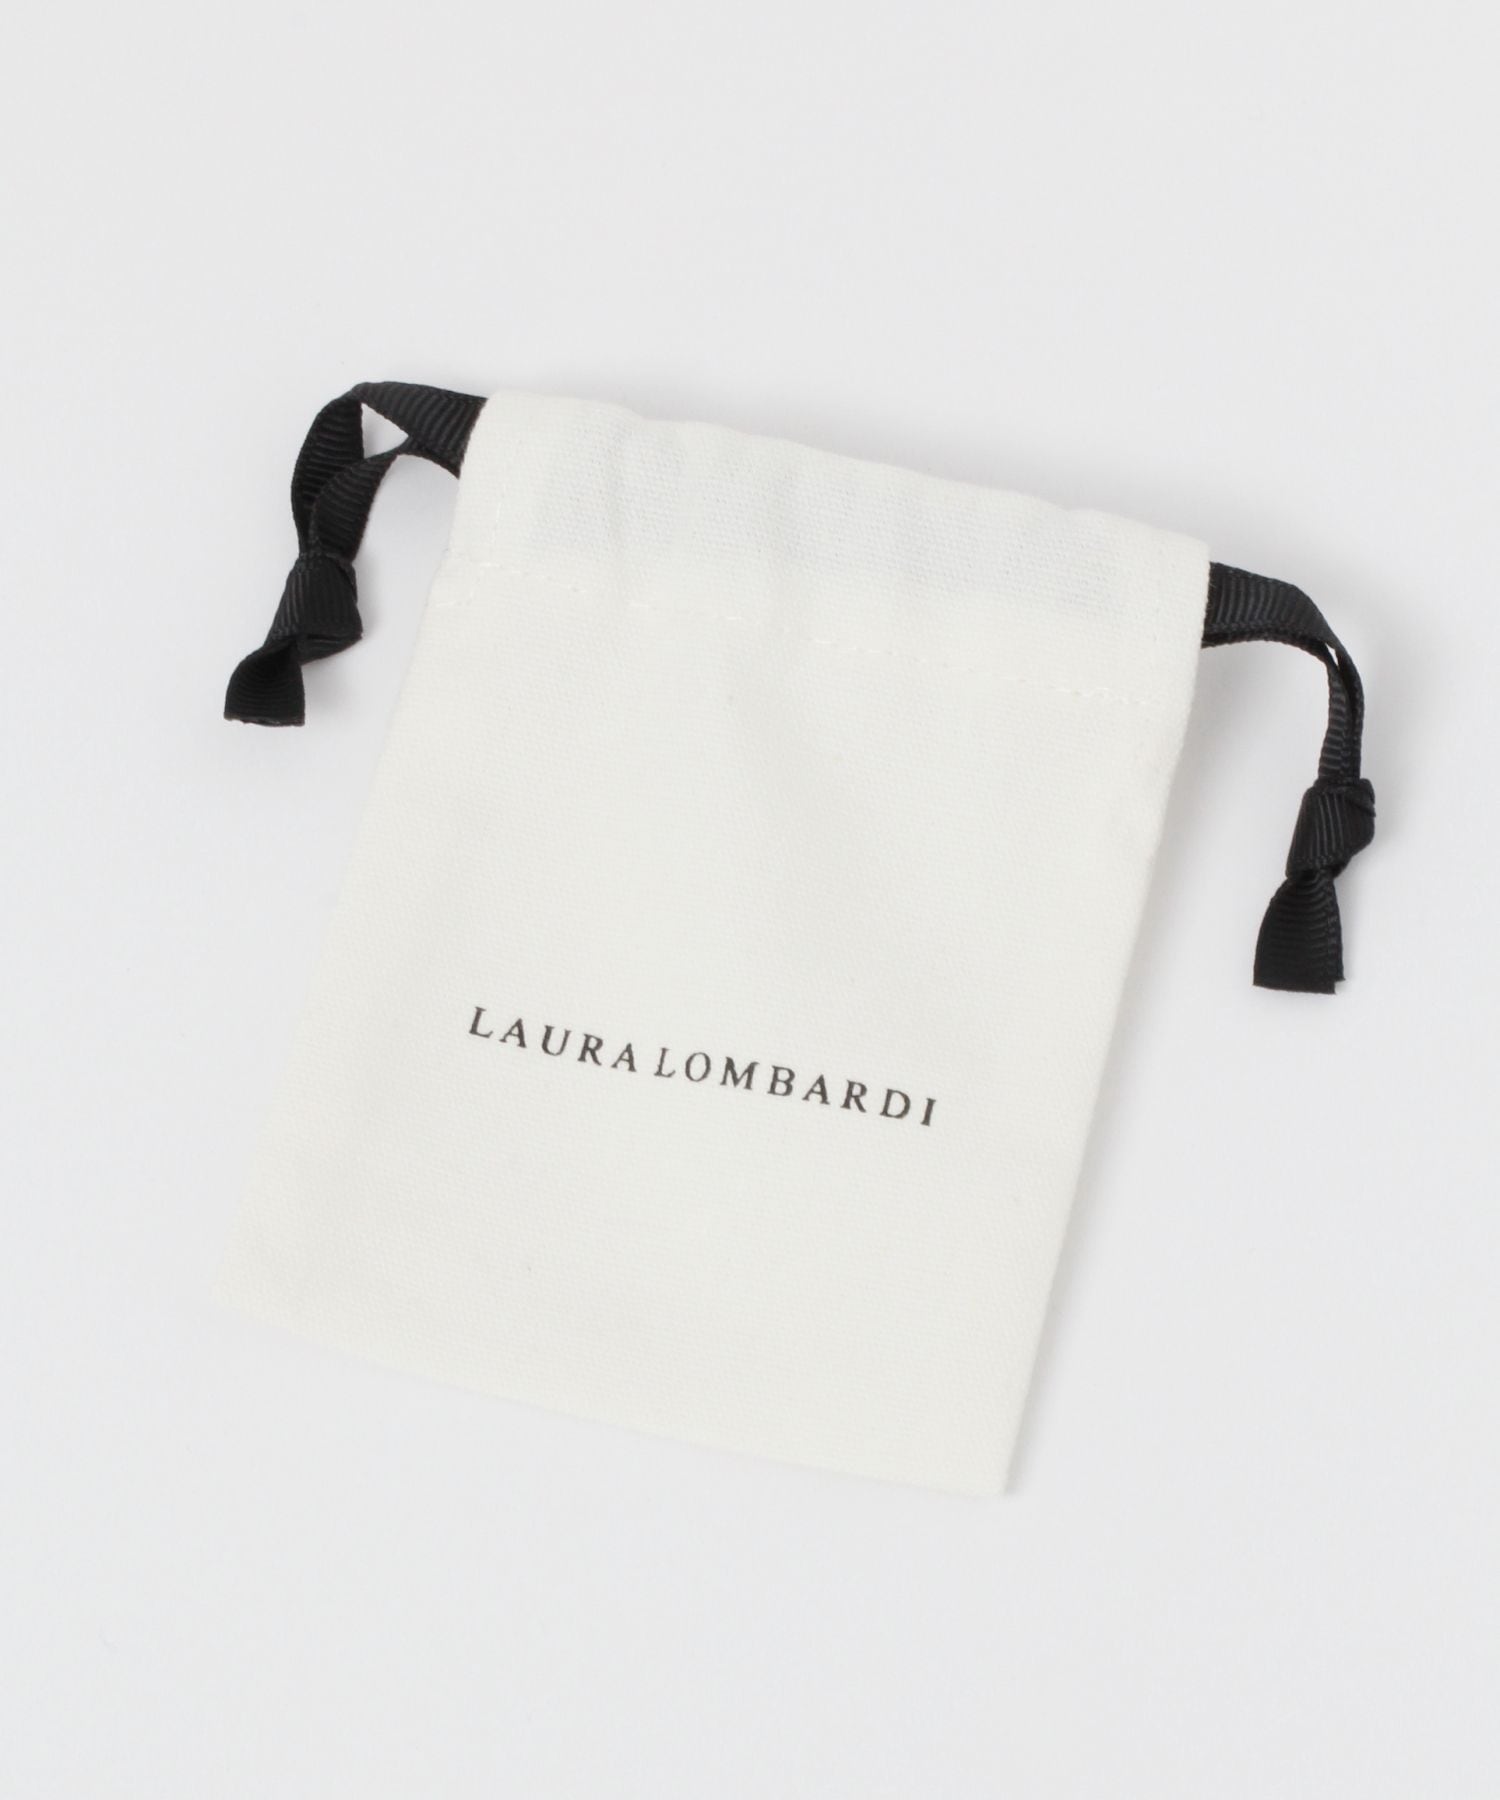 【Laura Lombardi】Barチェーン46 FREE